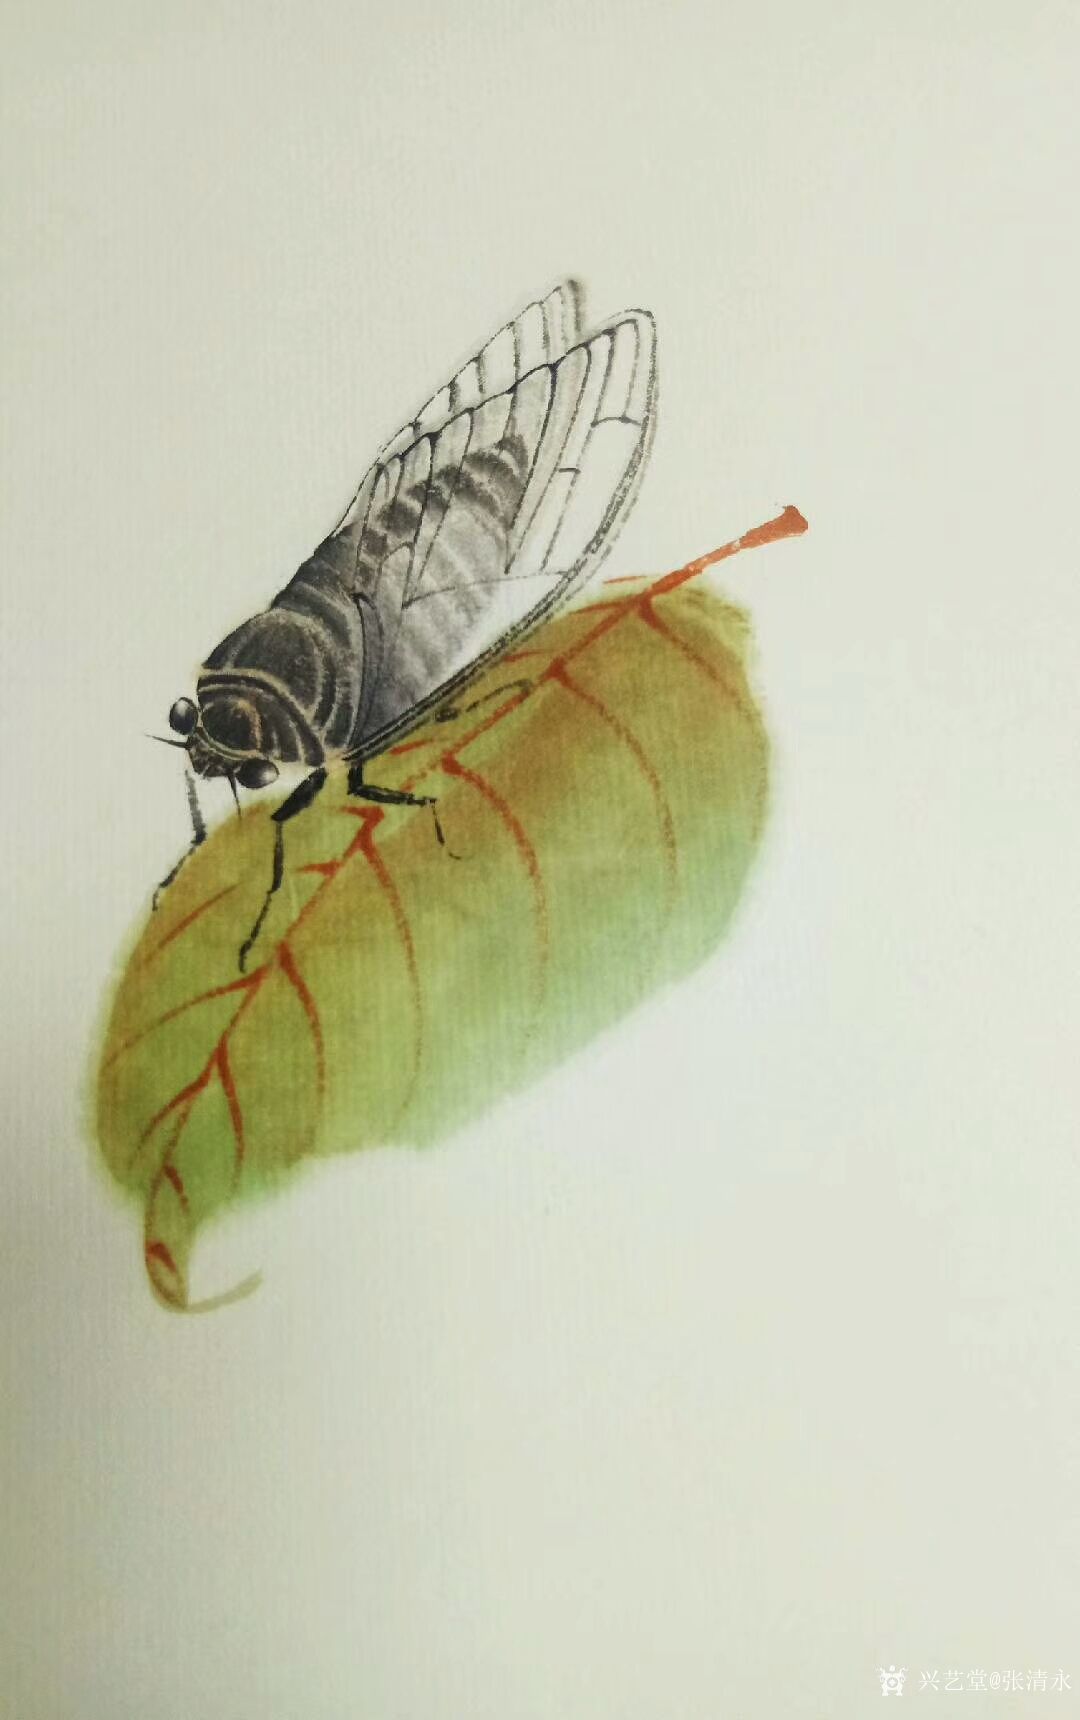 张清永日记:螳螂捕蝉,黄雀在后试试画小动物,扇面《加官图》,请指正